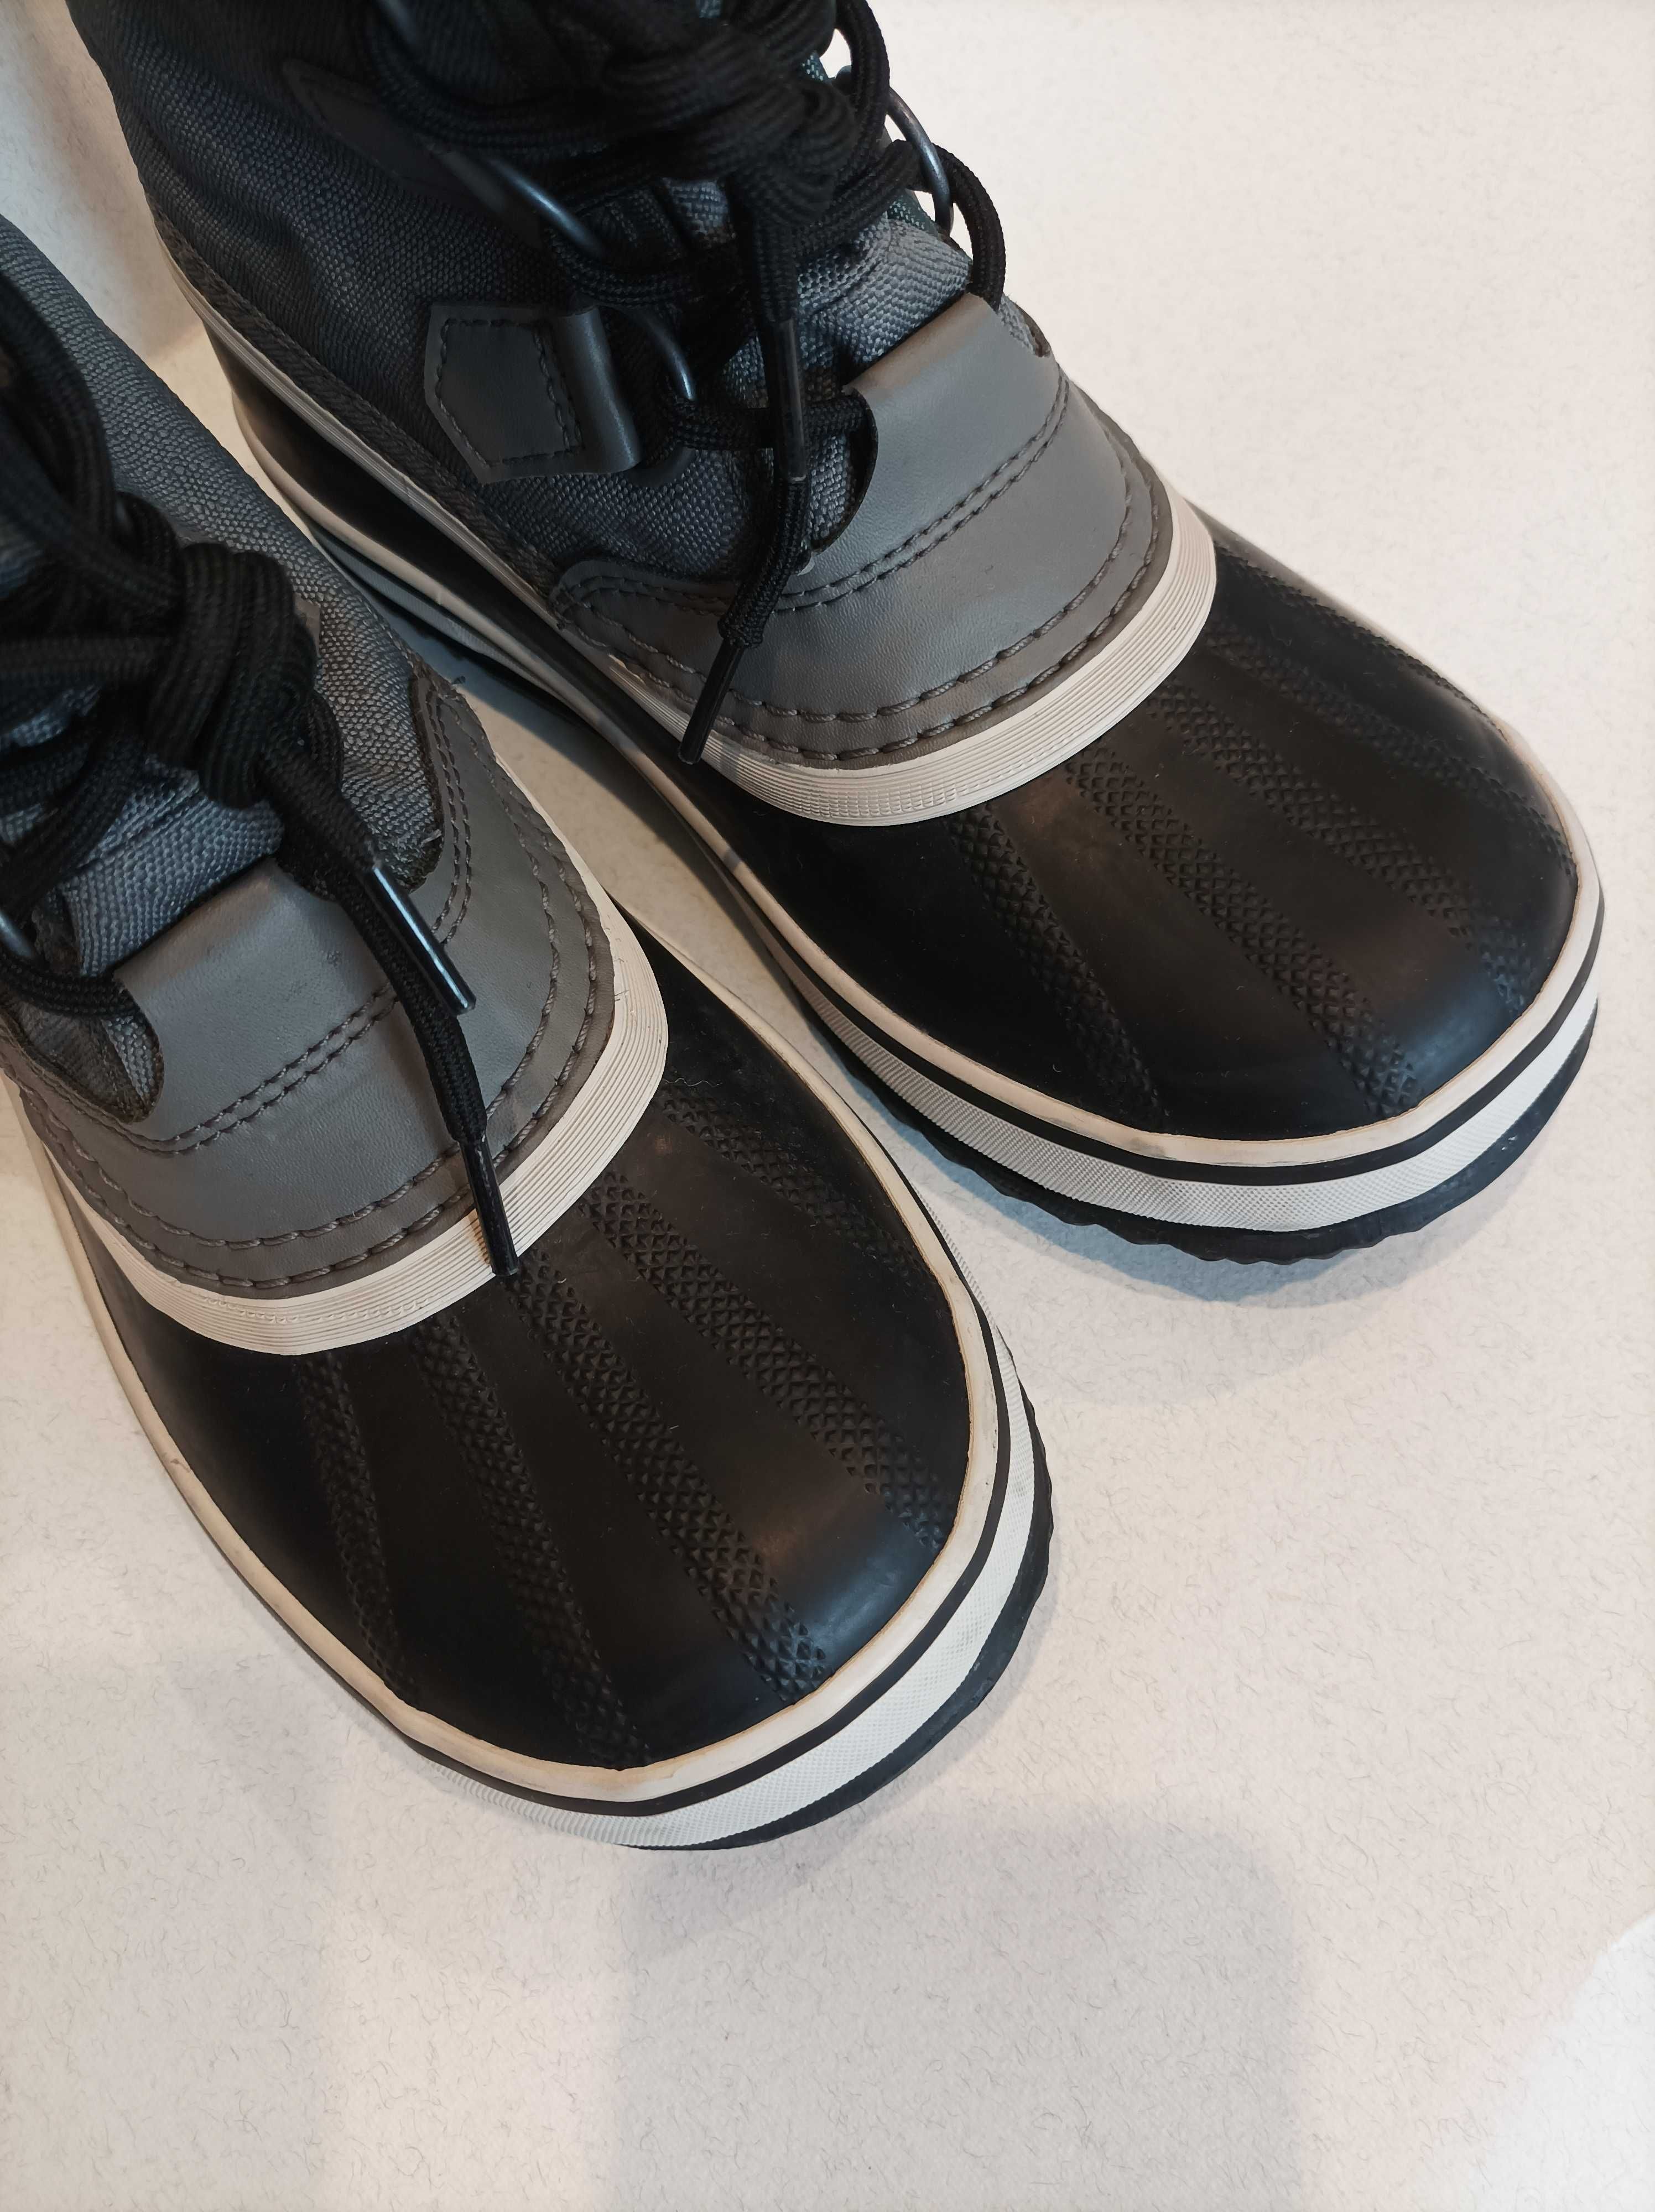 Зимові дитячі сапоги чоботи Влаго Водонепроникні Sorel Waterproof